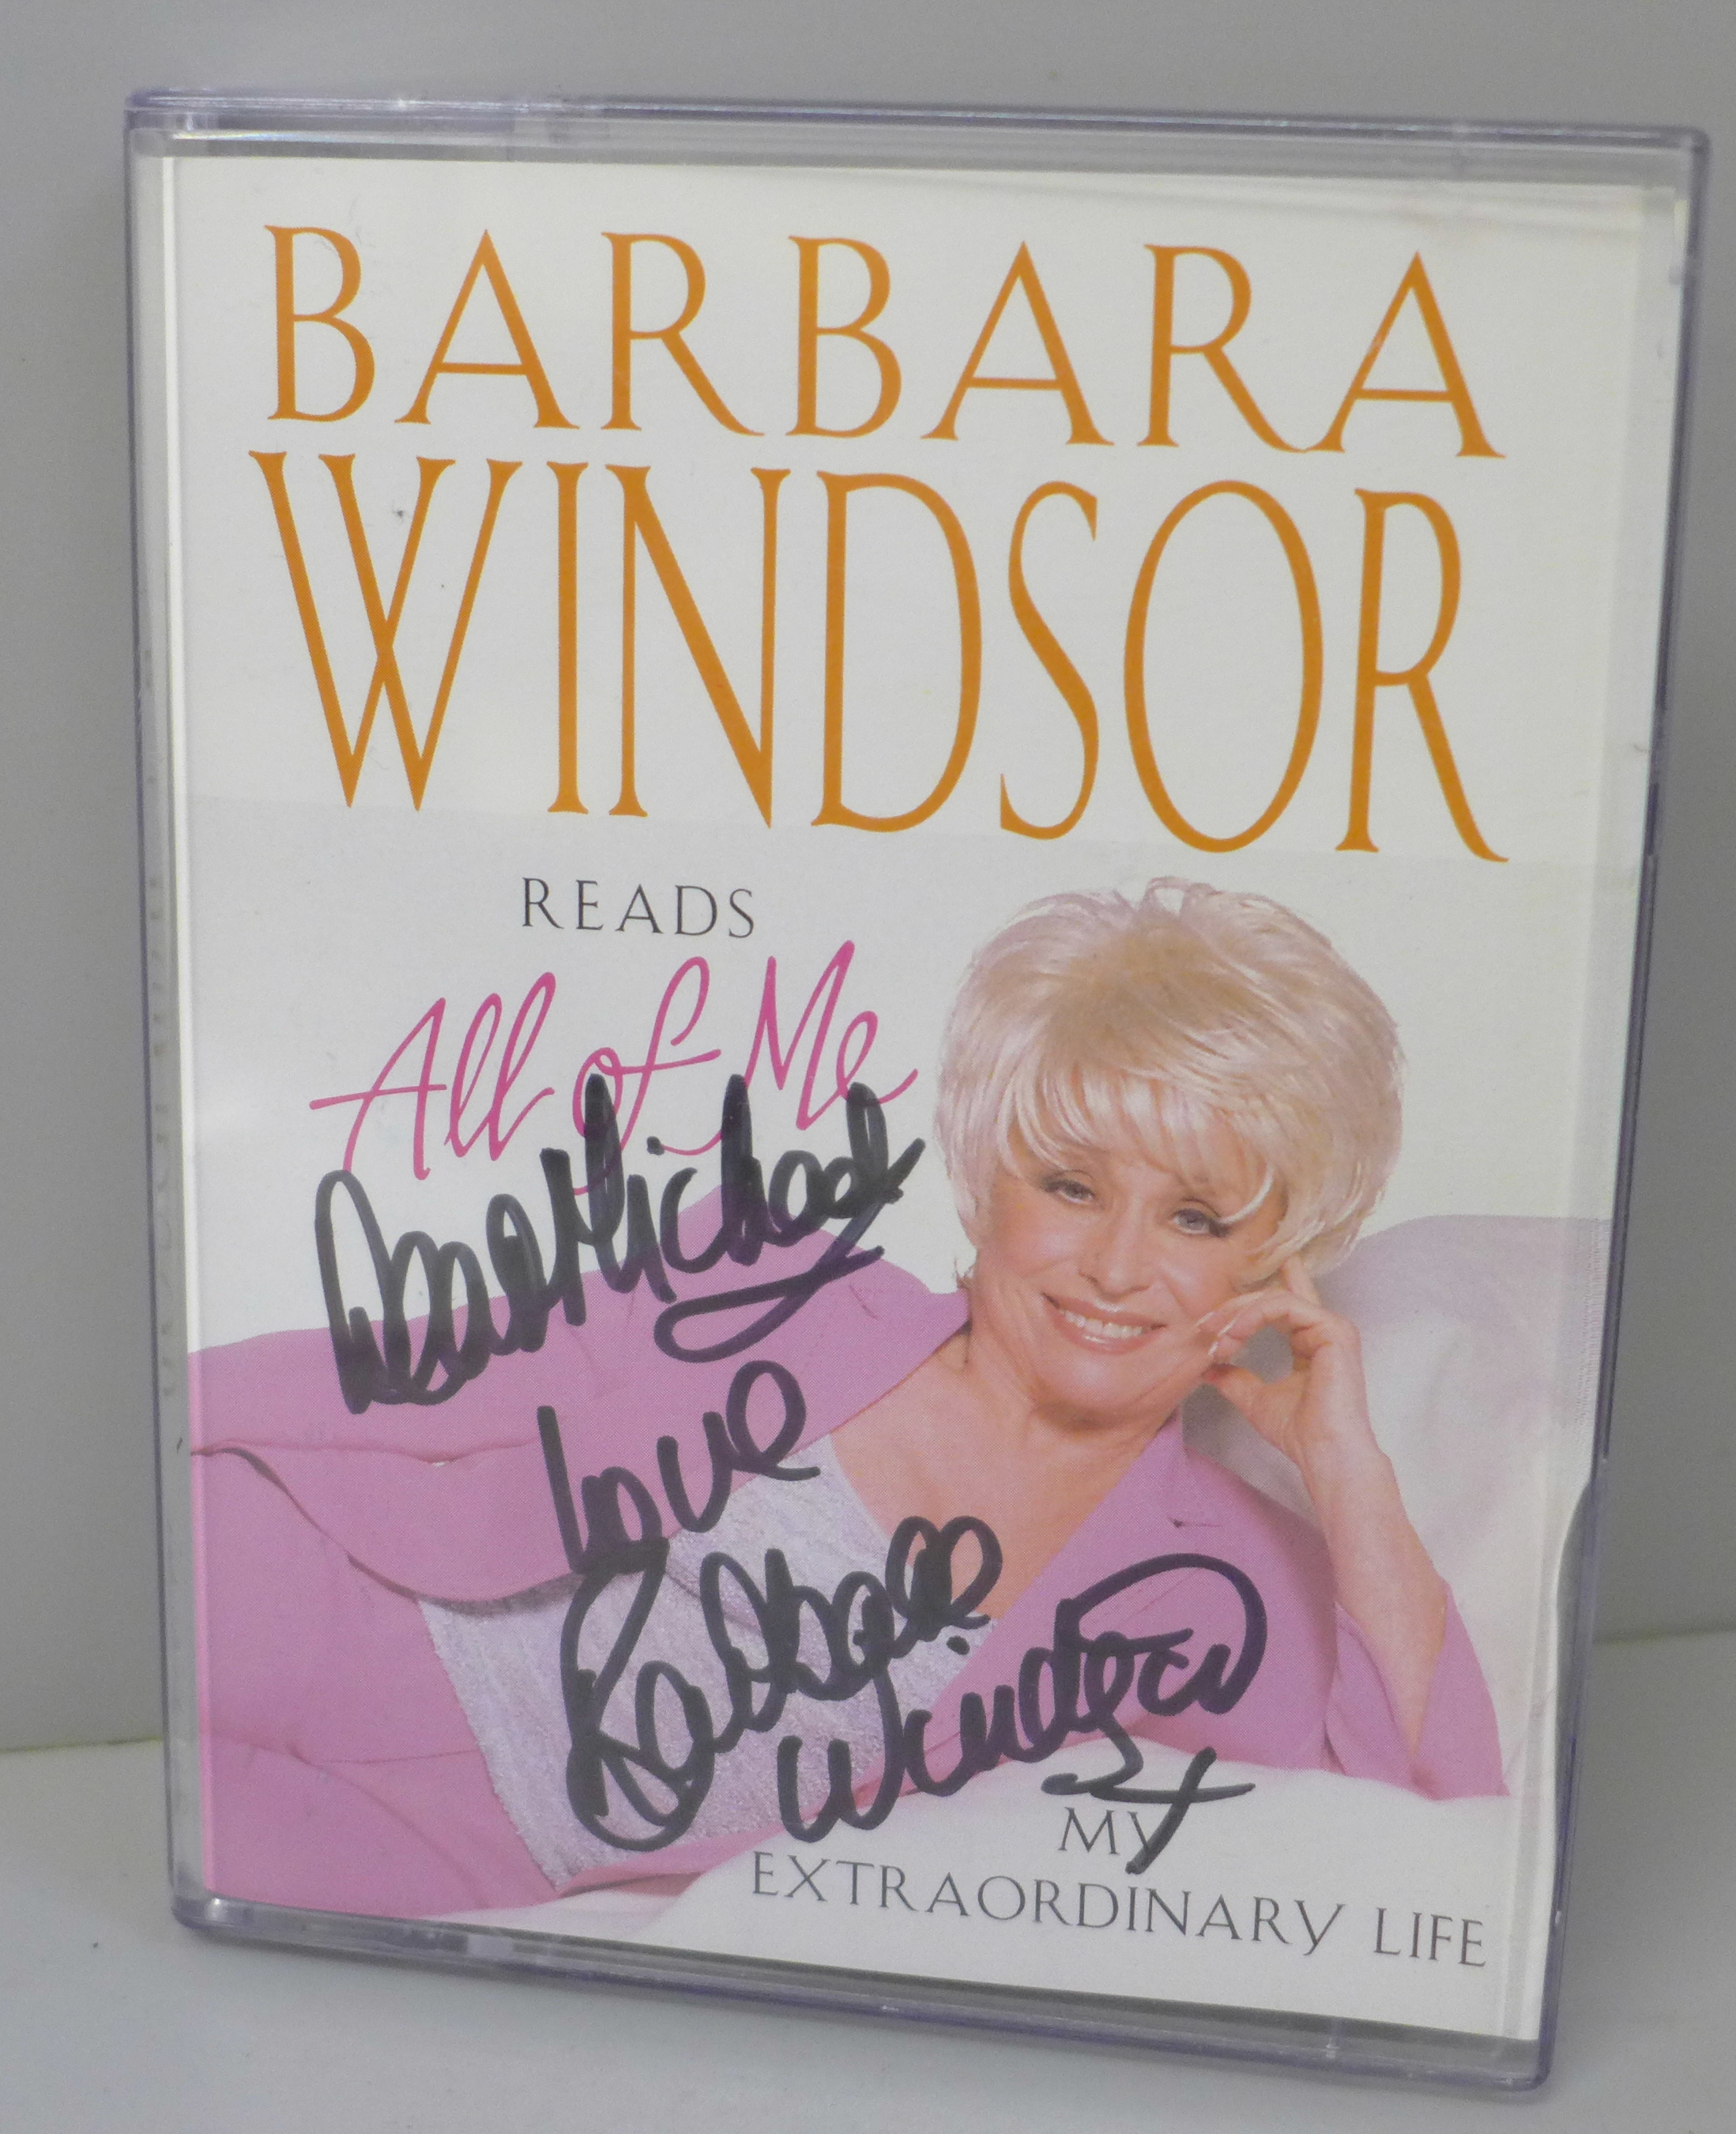 A Barbara Windsor autographed cassette tape